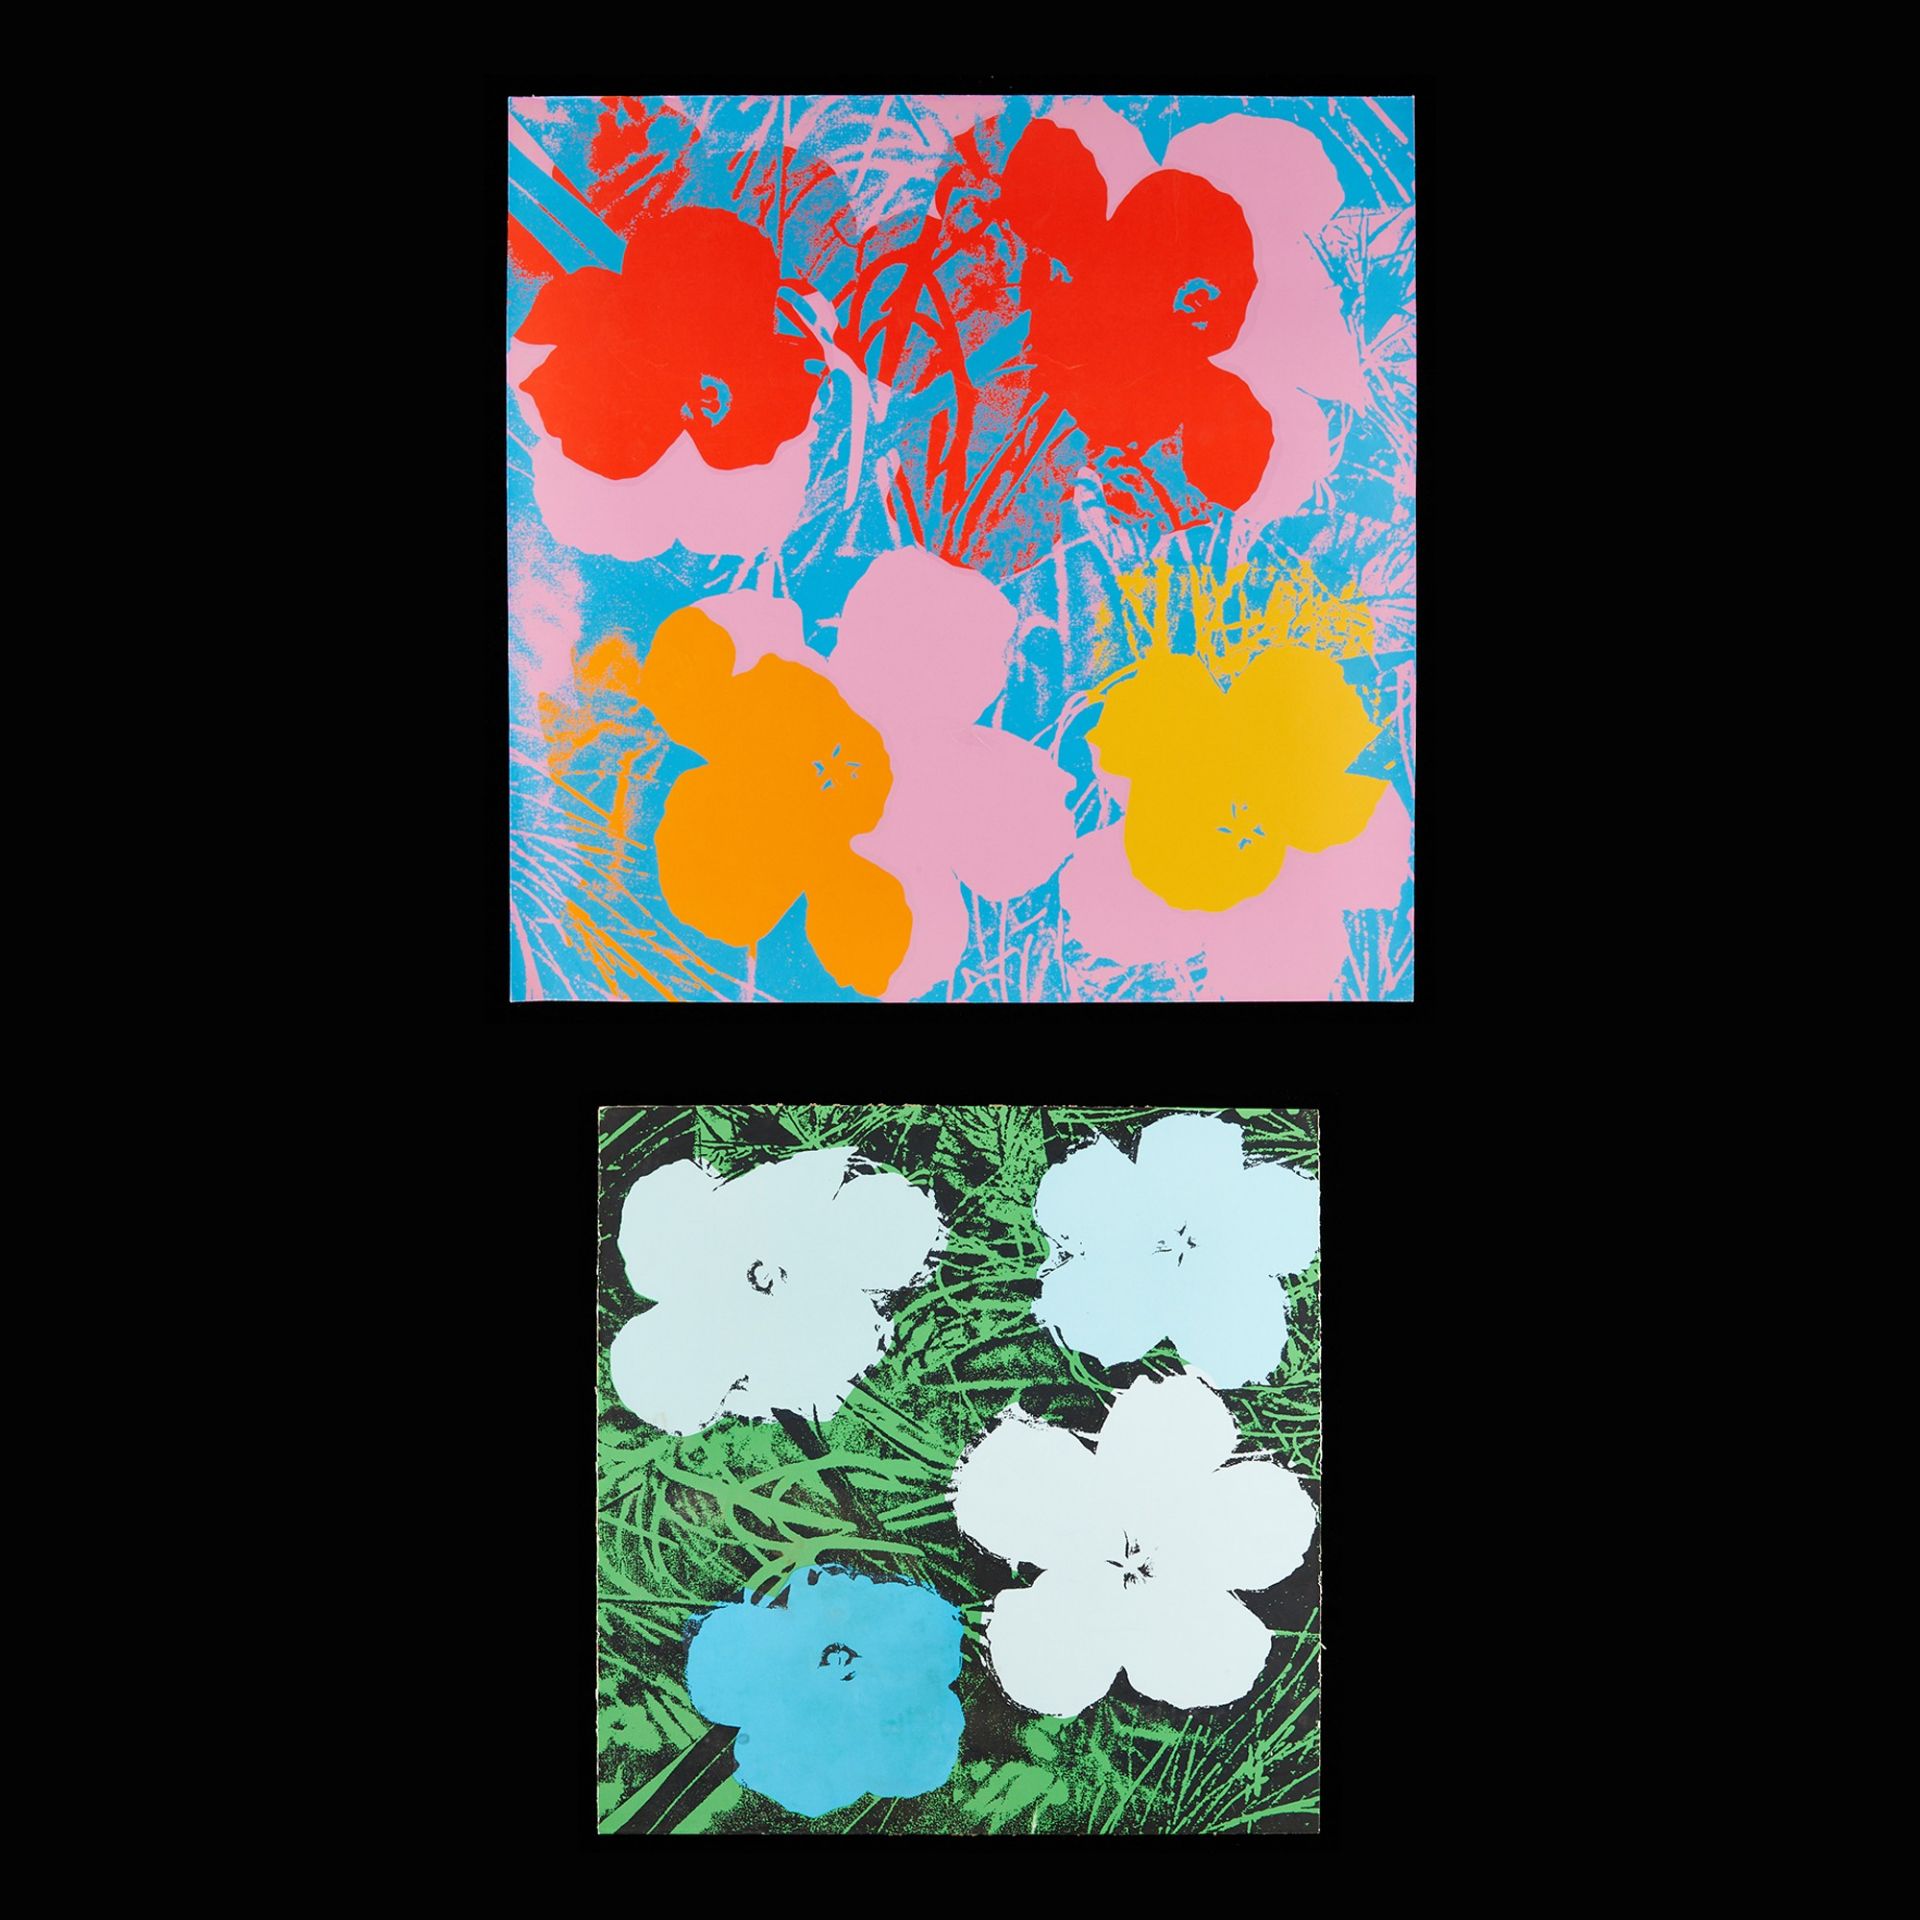 2 After Andy Warhol "Flower" Silkscreens